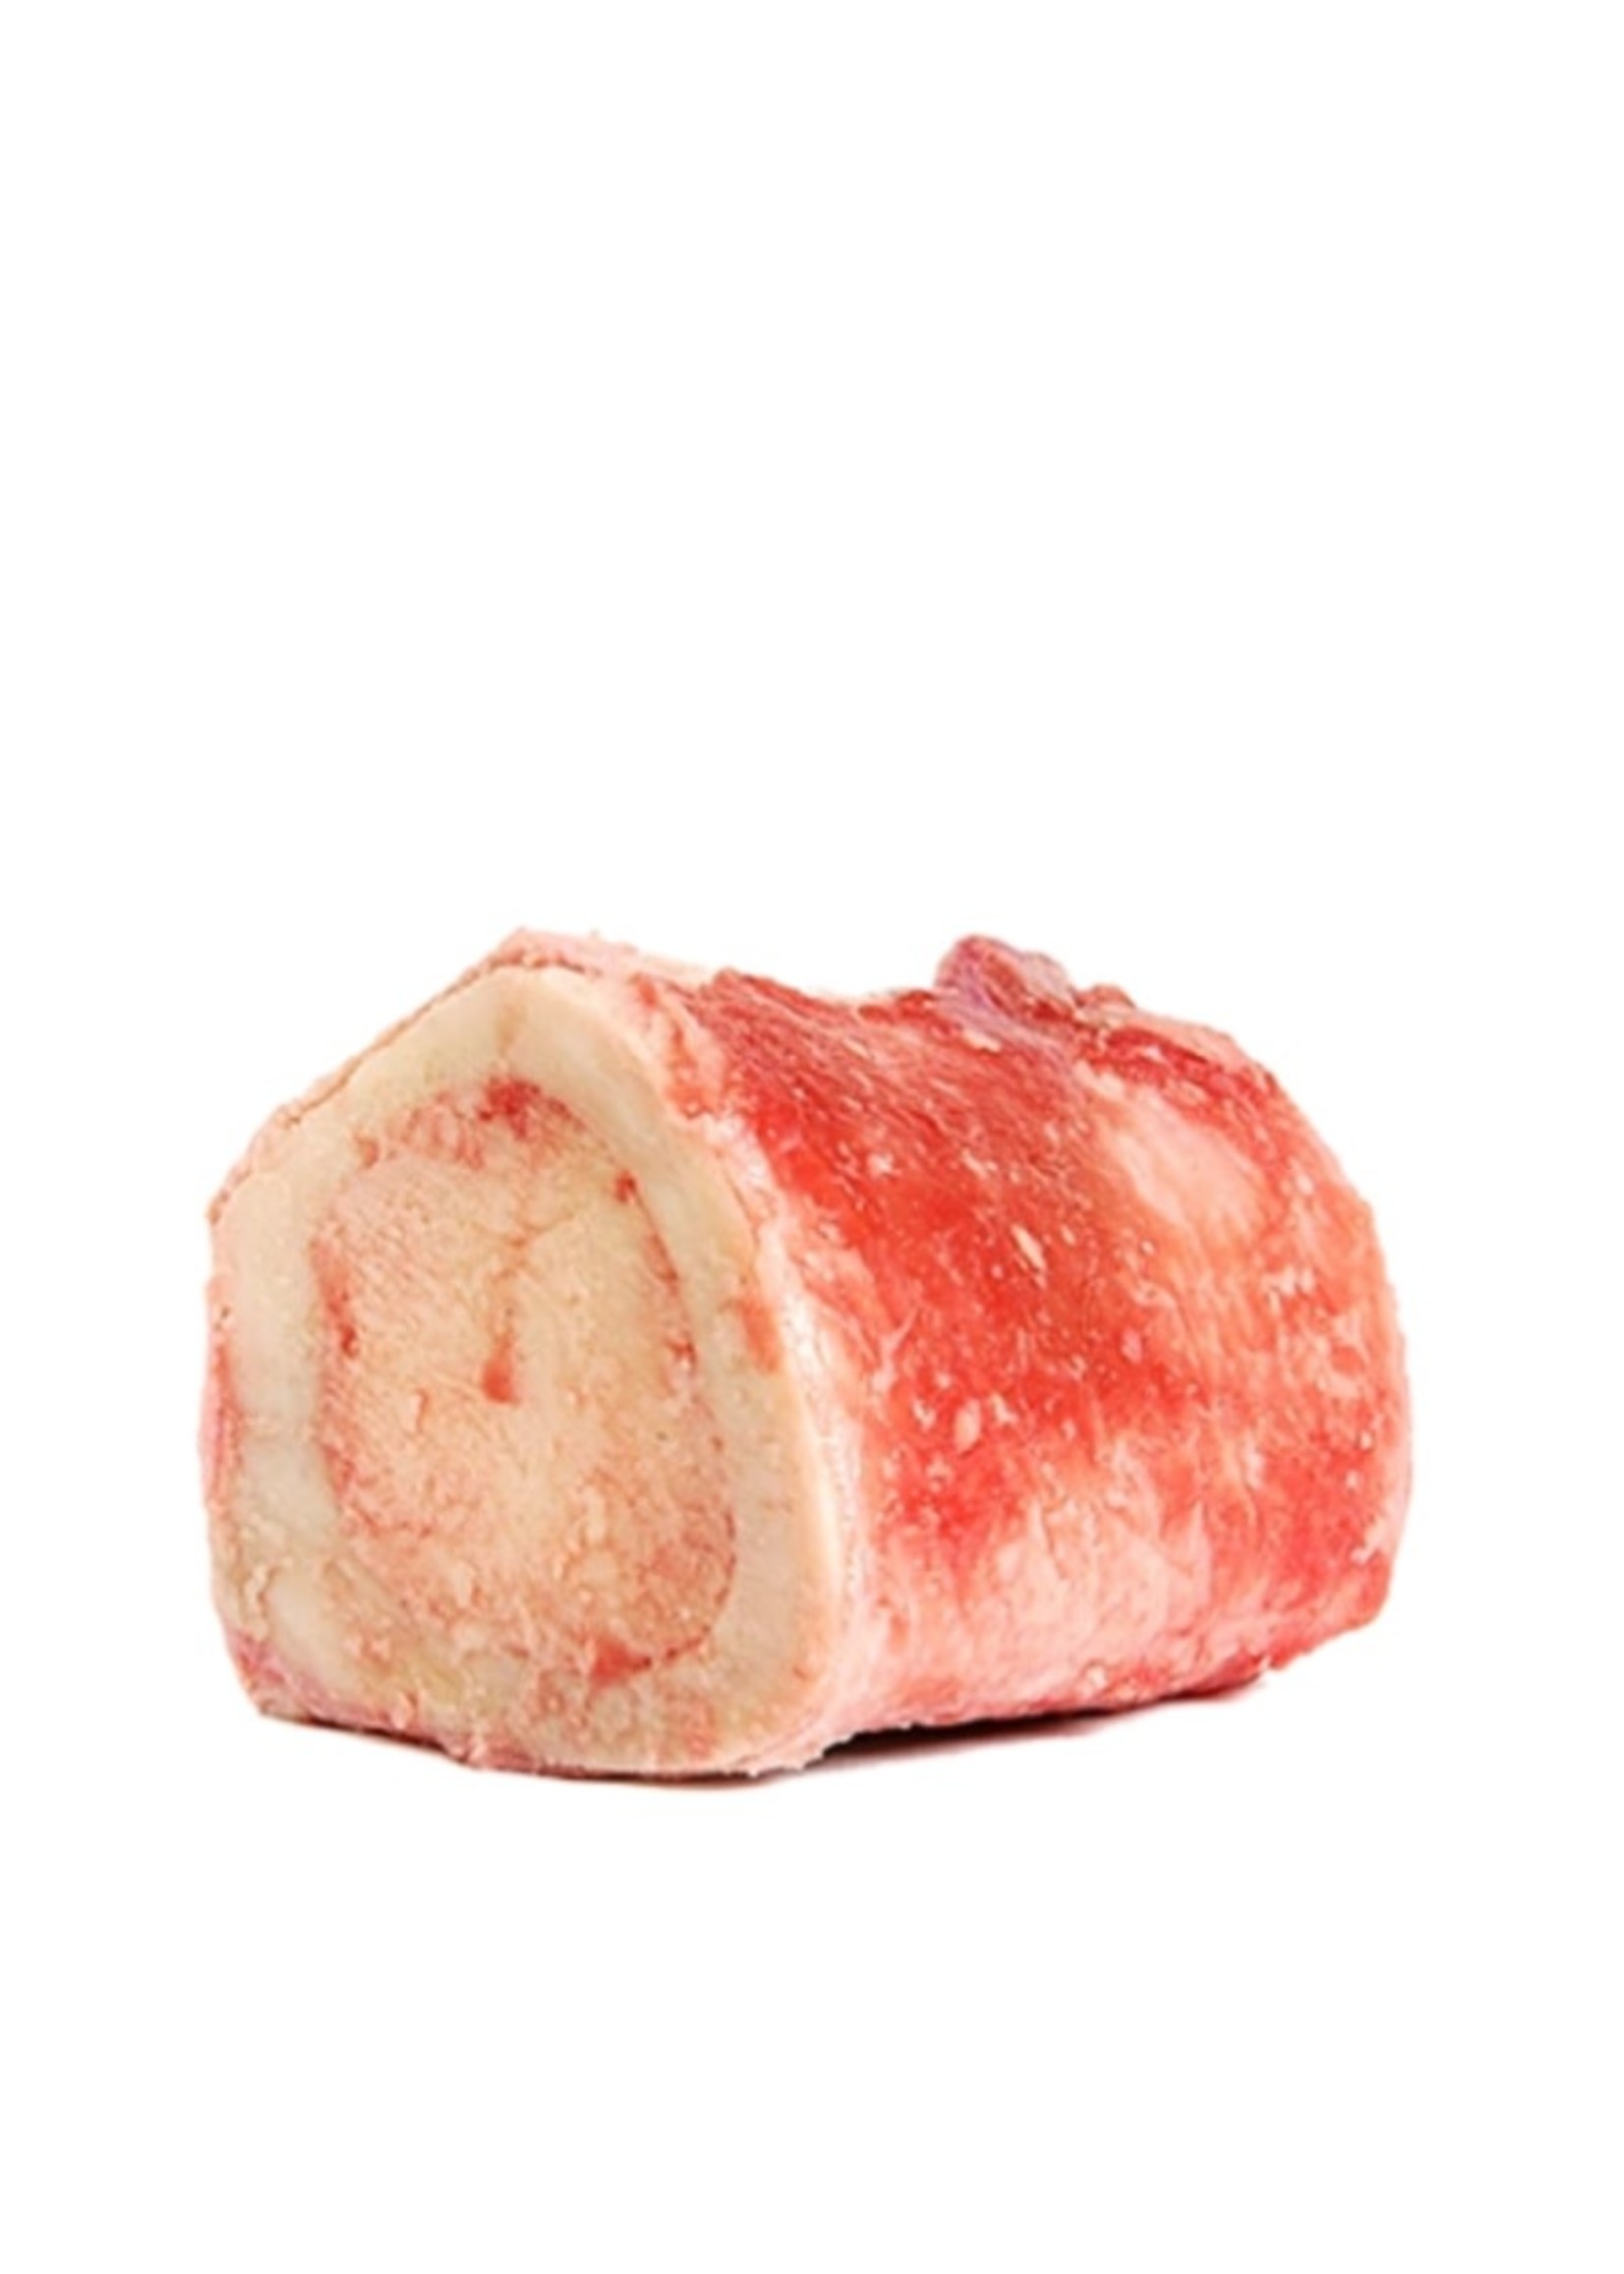 Primal Pet Foods Raw Beef Marrow Bone 1 Pack Medium (Frozen)